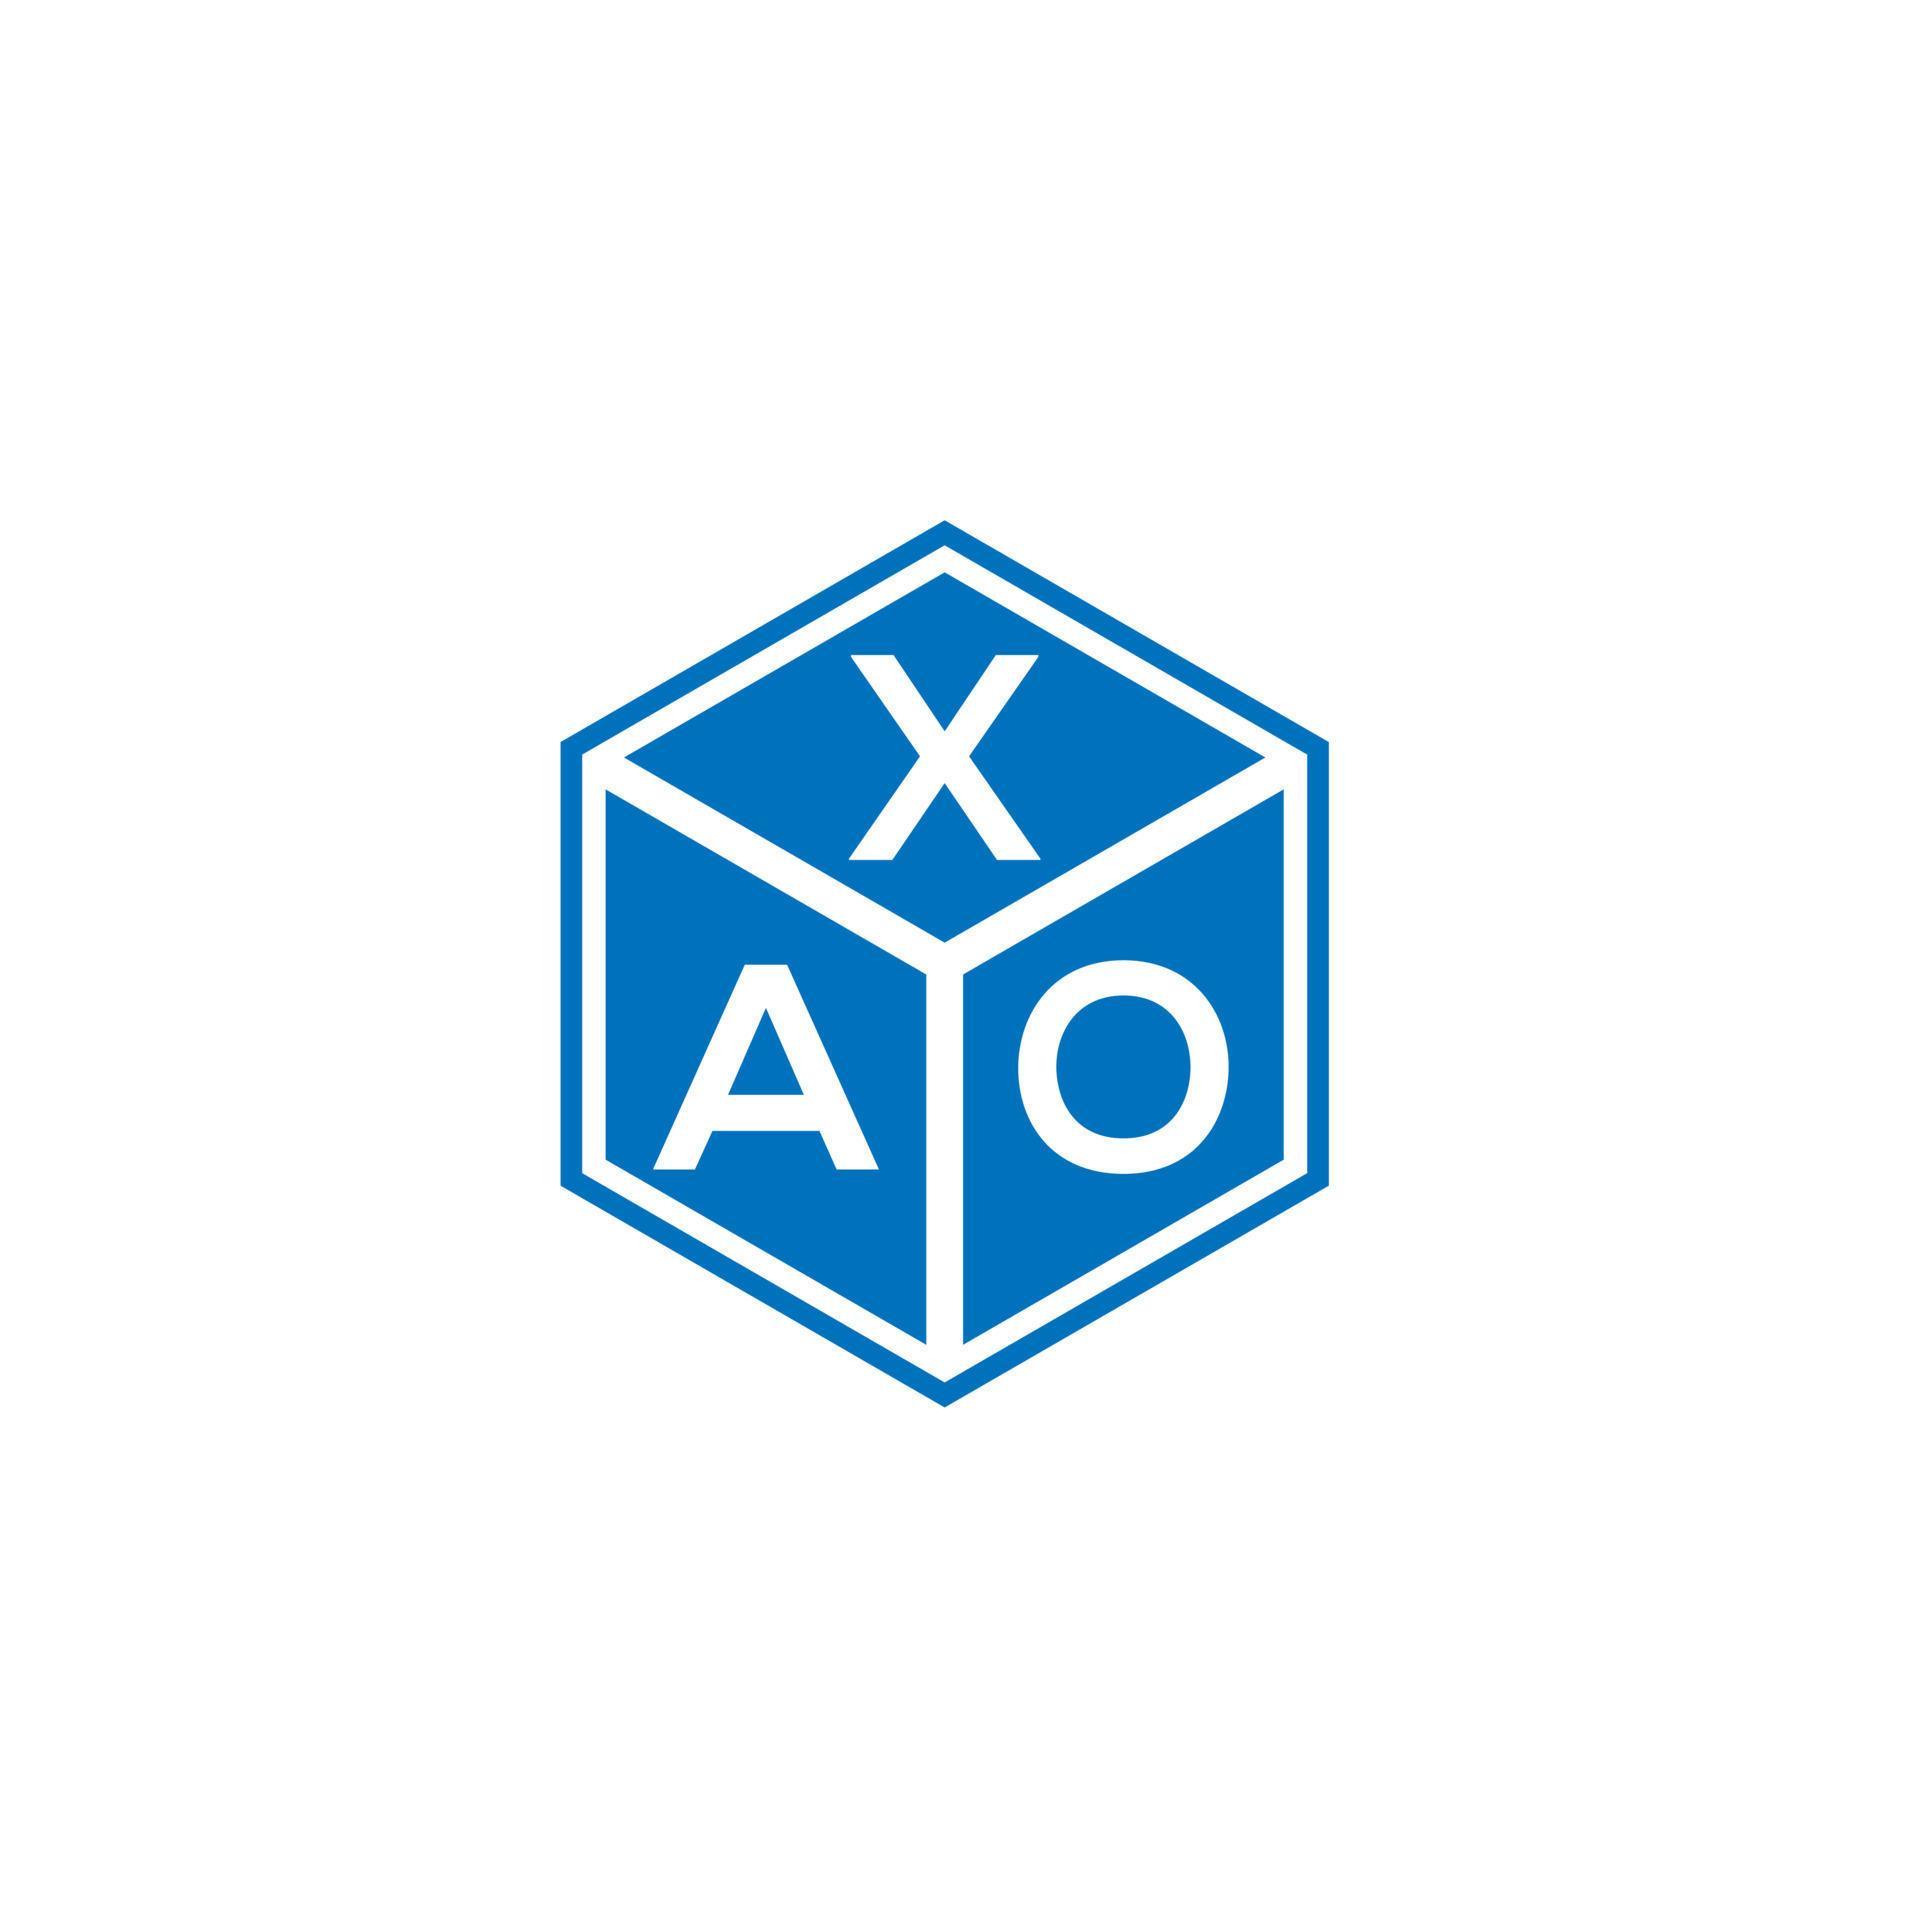 Xao-Brief-Logo-Design auf weißem Hintergrund. Xao kreatives Initialen-Buchstaben-Logo-Konzept. Xao-Buchstaben-Design. vektor